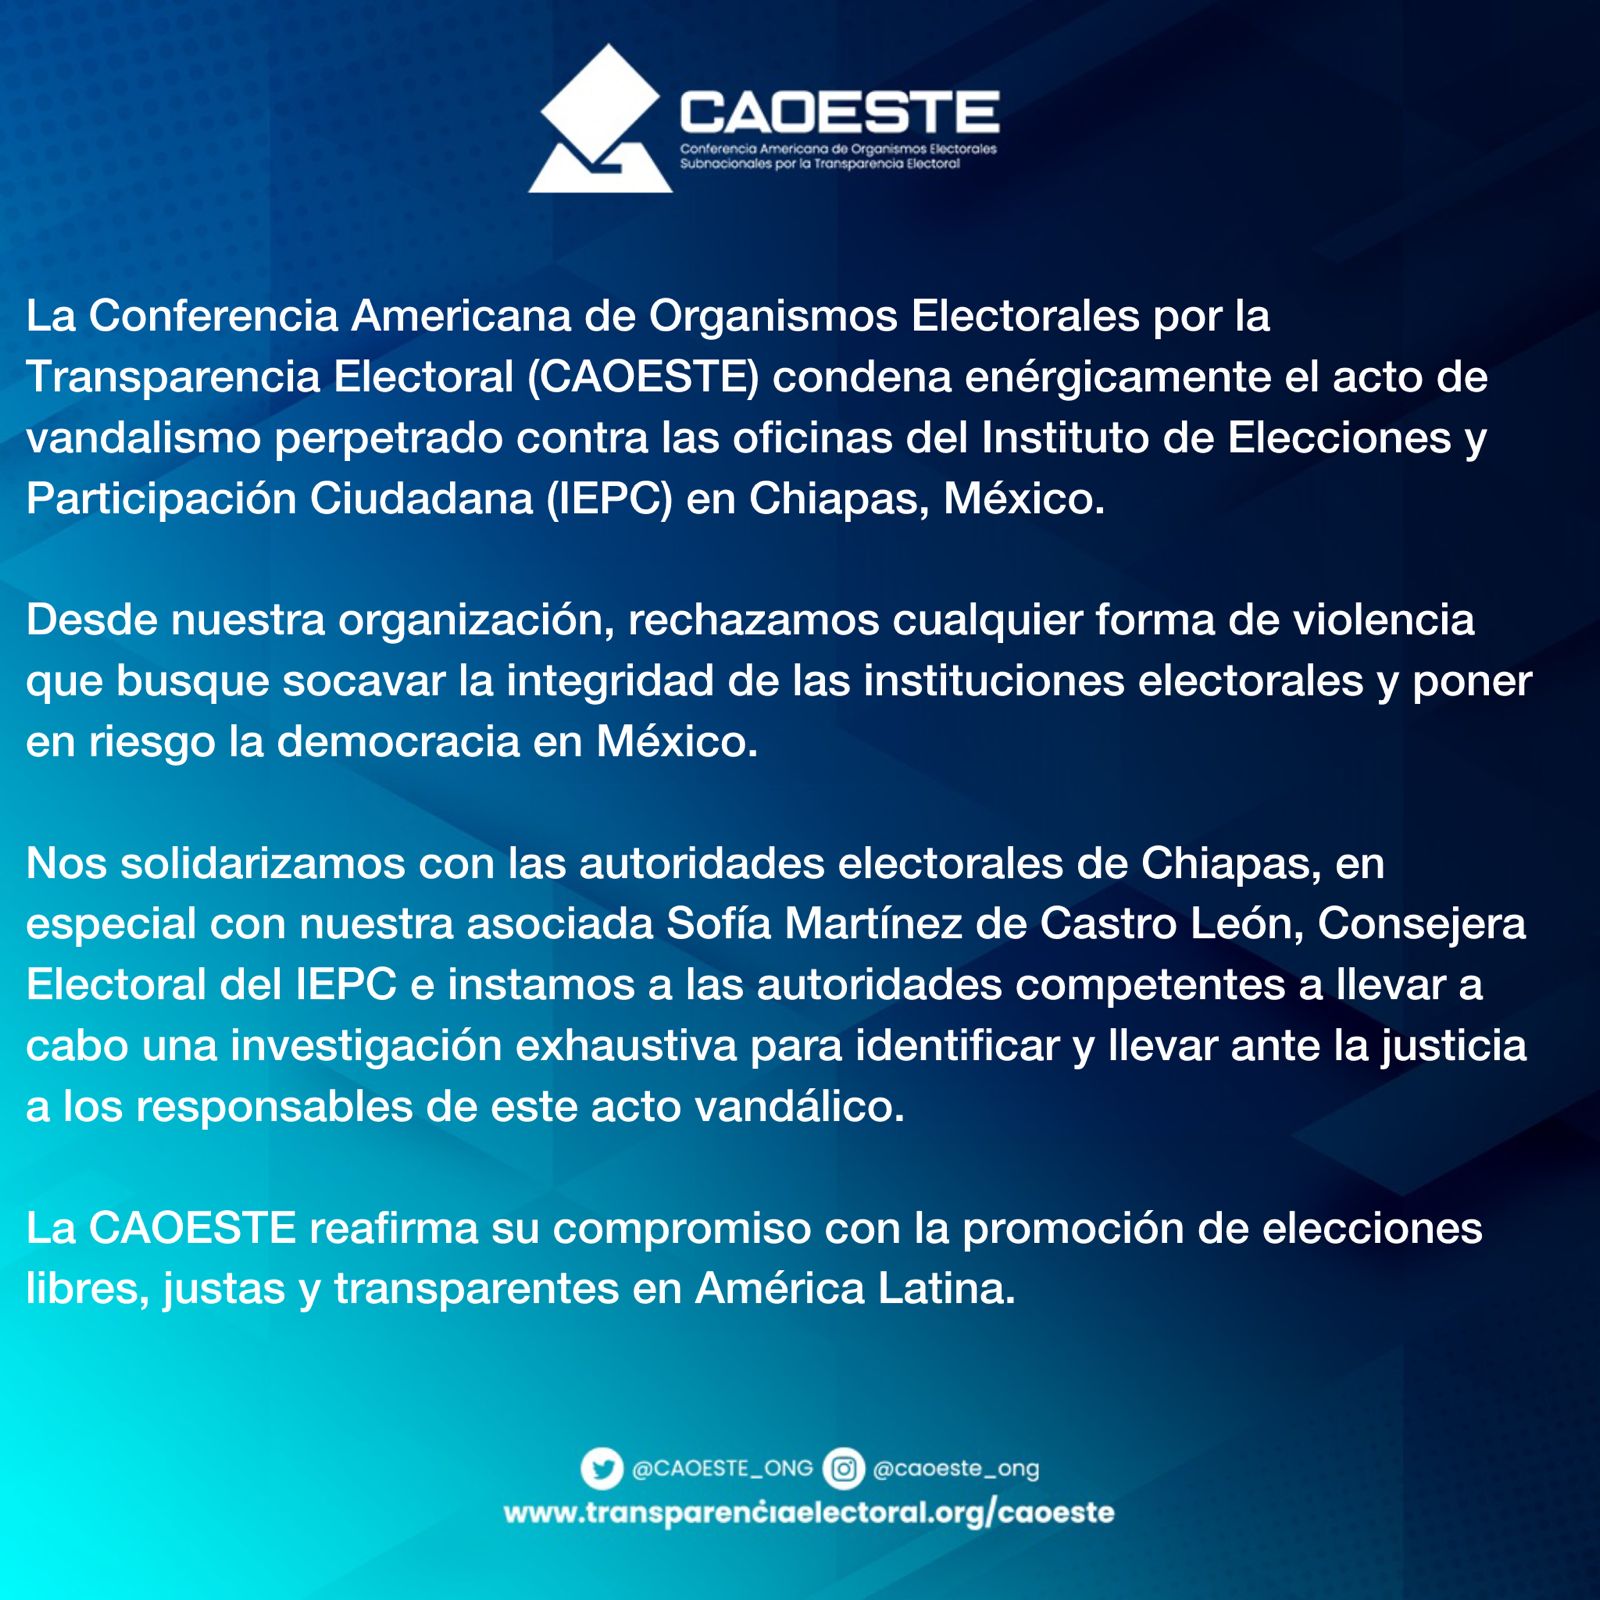 La CAOESTE condena el acto de vandalismo al Instituto de Elecciones y Participación Ciudadana (IEPC) en Chiapas